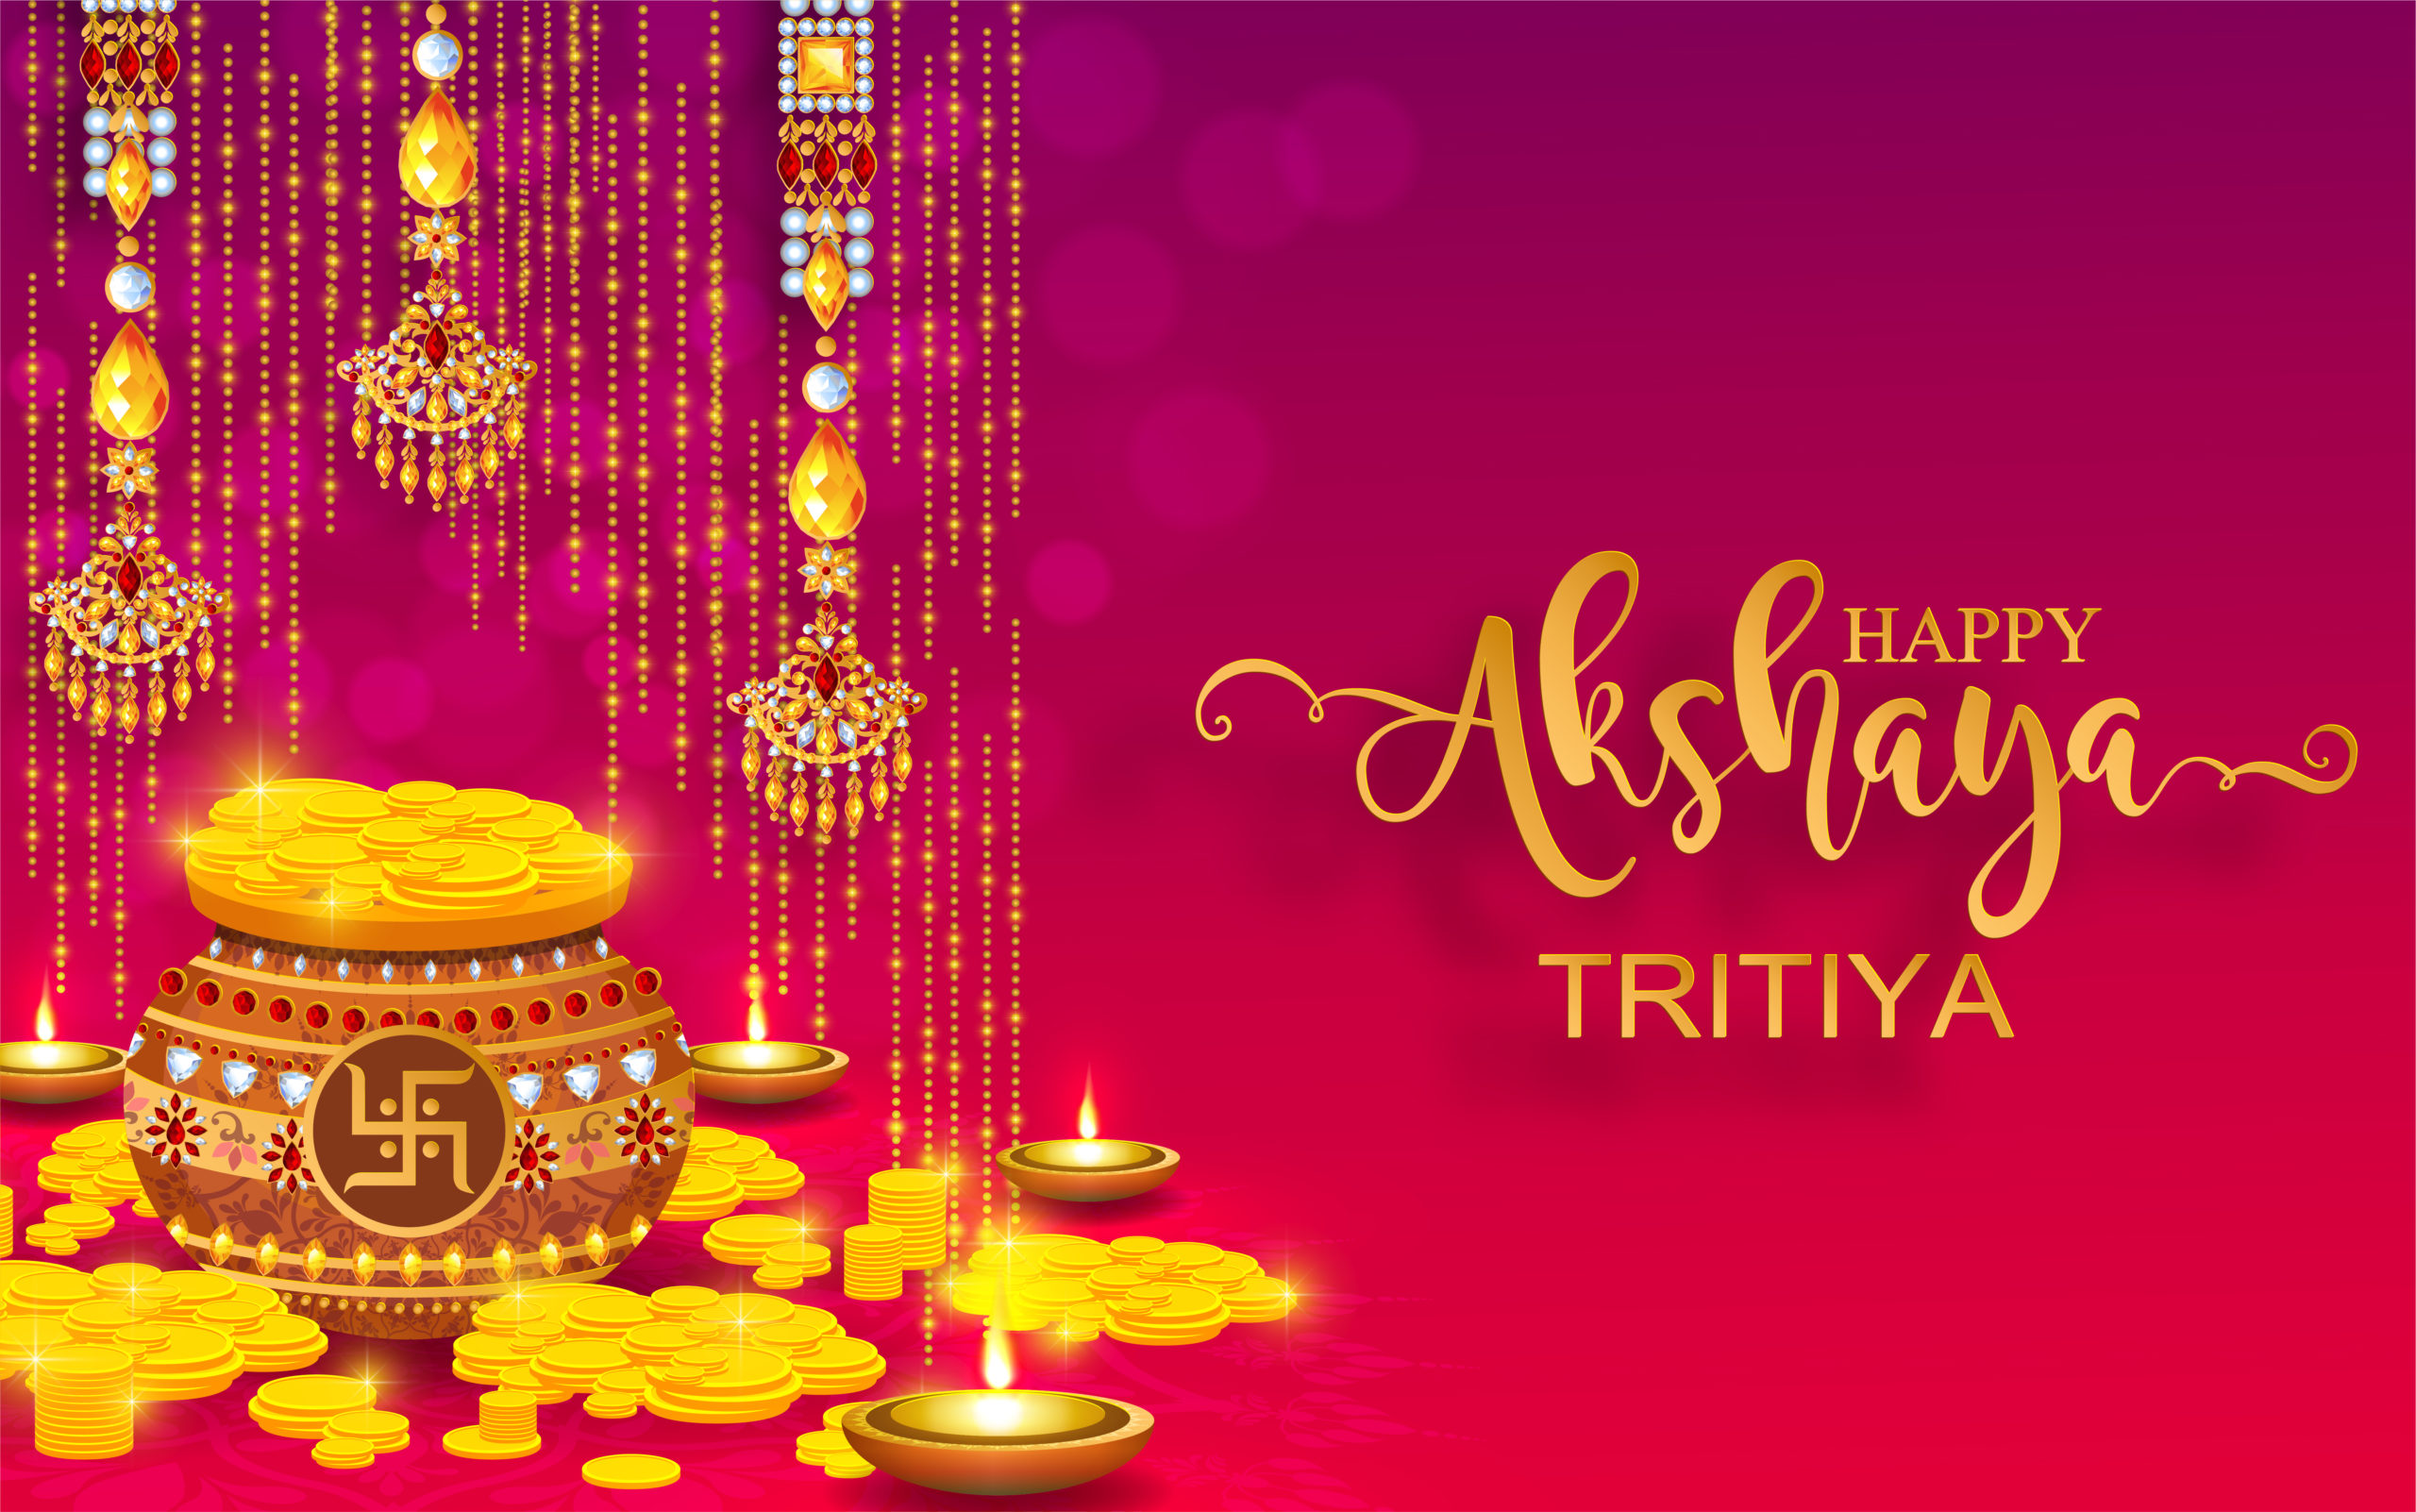 Happy Akshaya Tritiya 2021: WhatsApp Status Video Download for Free